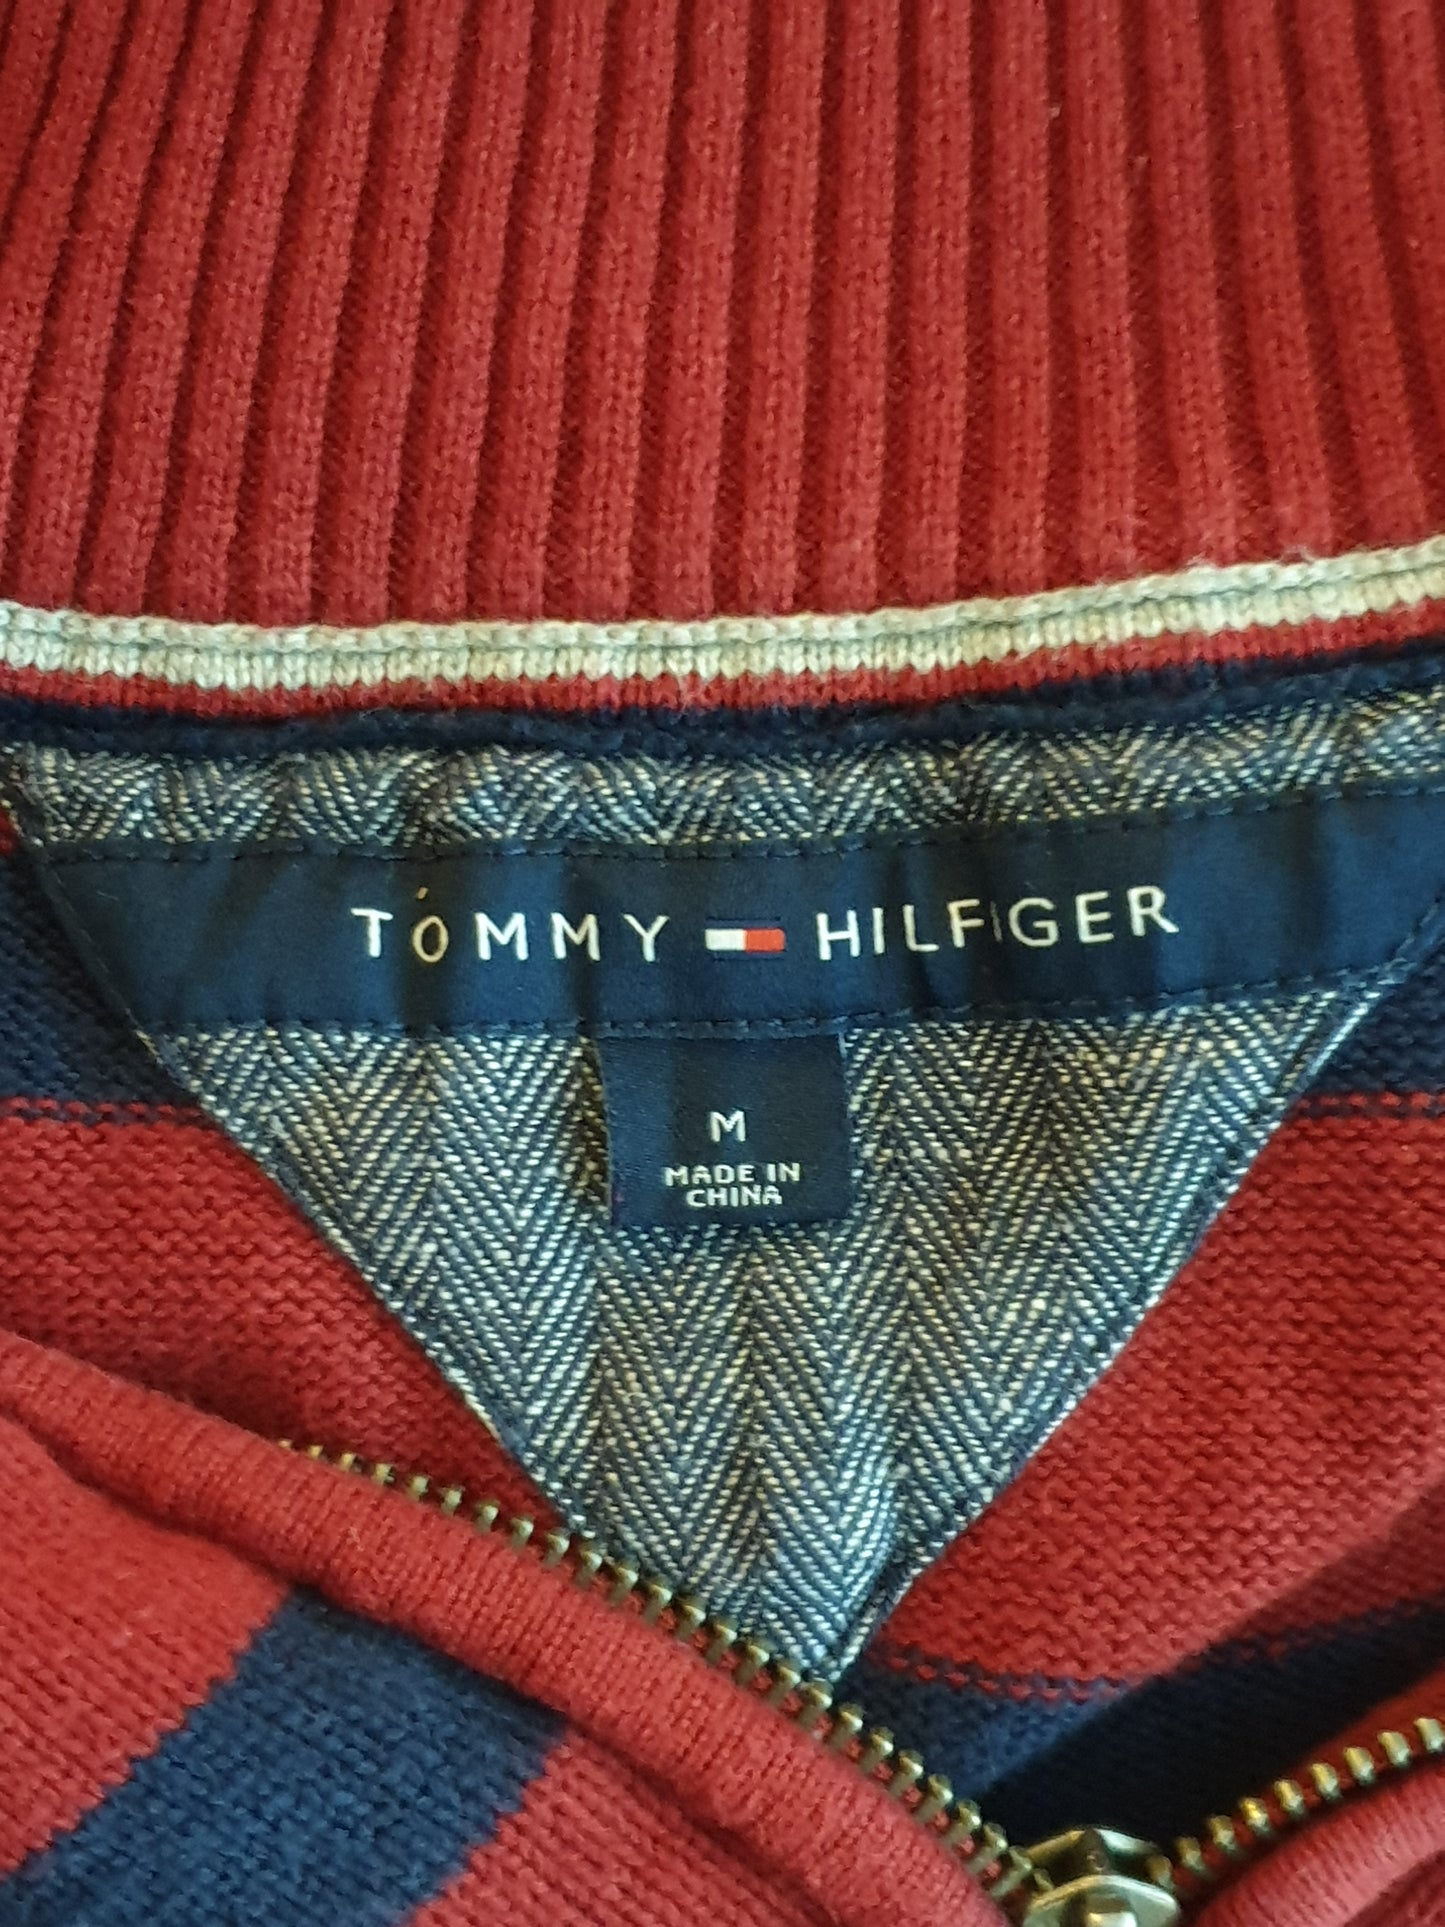 Tommy Hilfiger - Pullover - Streifen - Rot/Grau - Herren - M